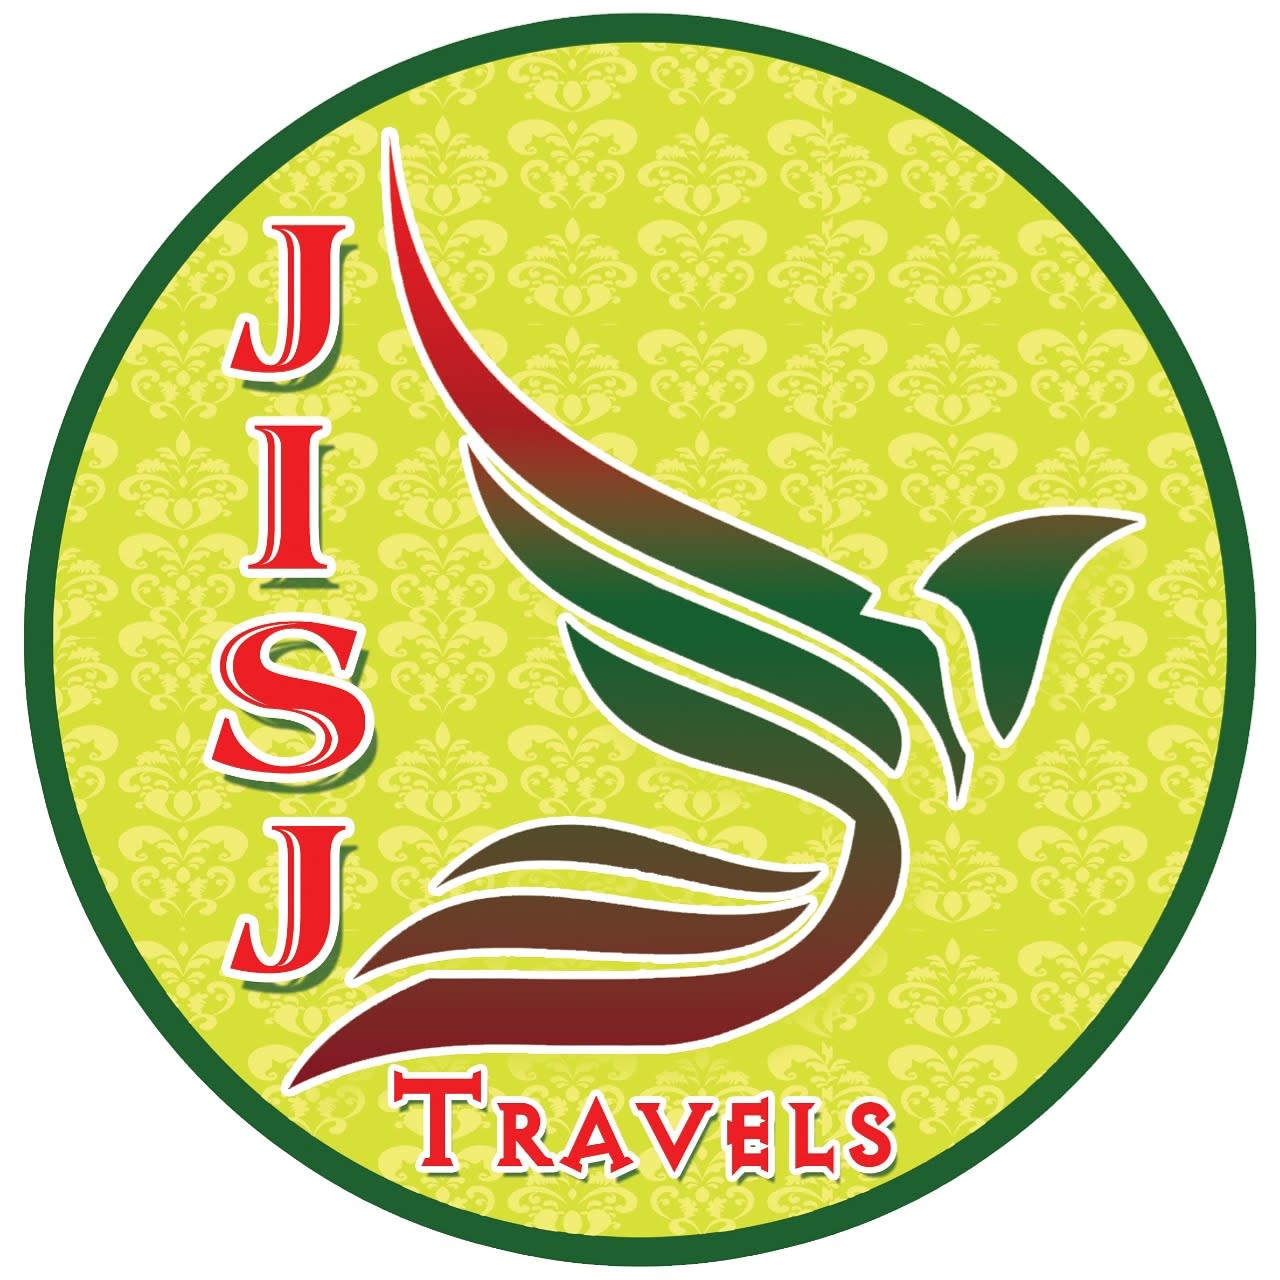 Jetha Iccha Setha Jai (J.I.S.J) Tours & Travels